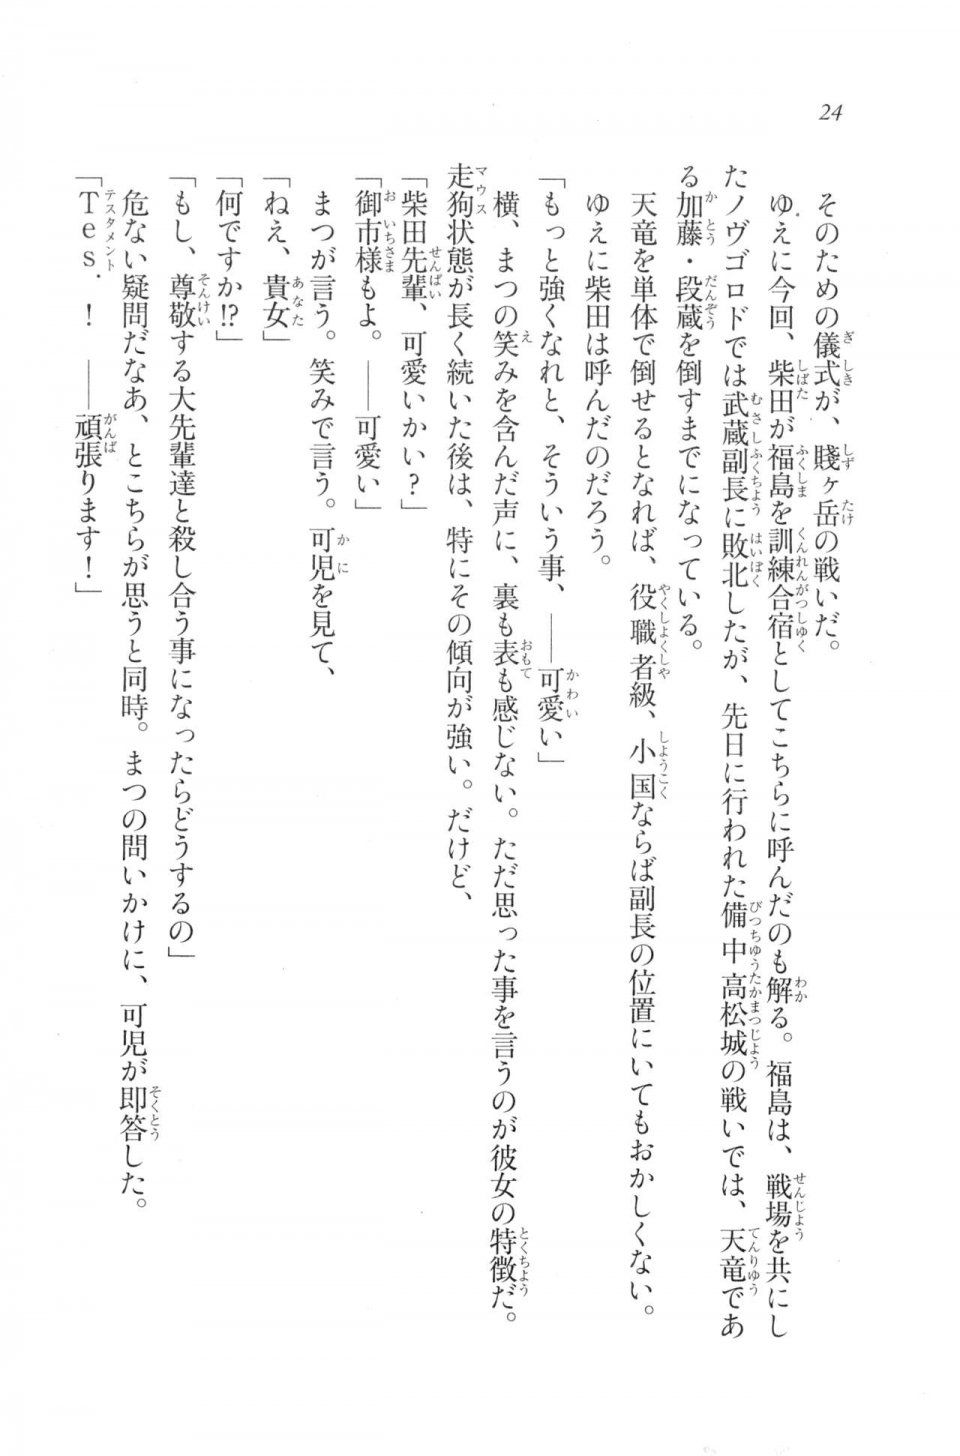 Kyoukai Senjou no Horizon LN Vol 20(8B) - Photo #24